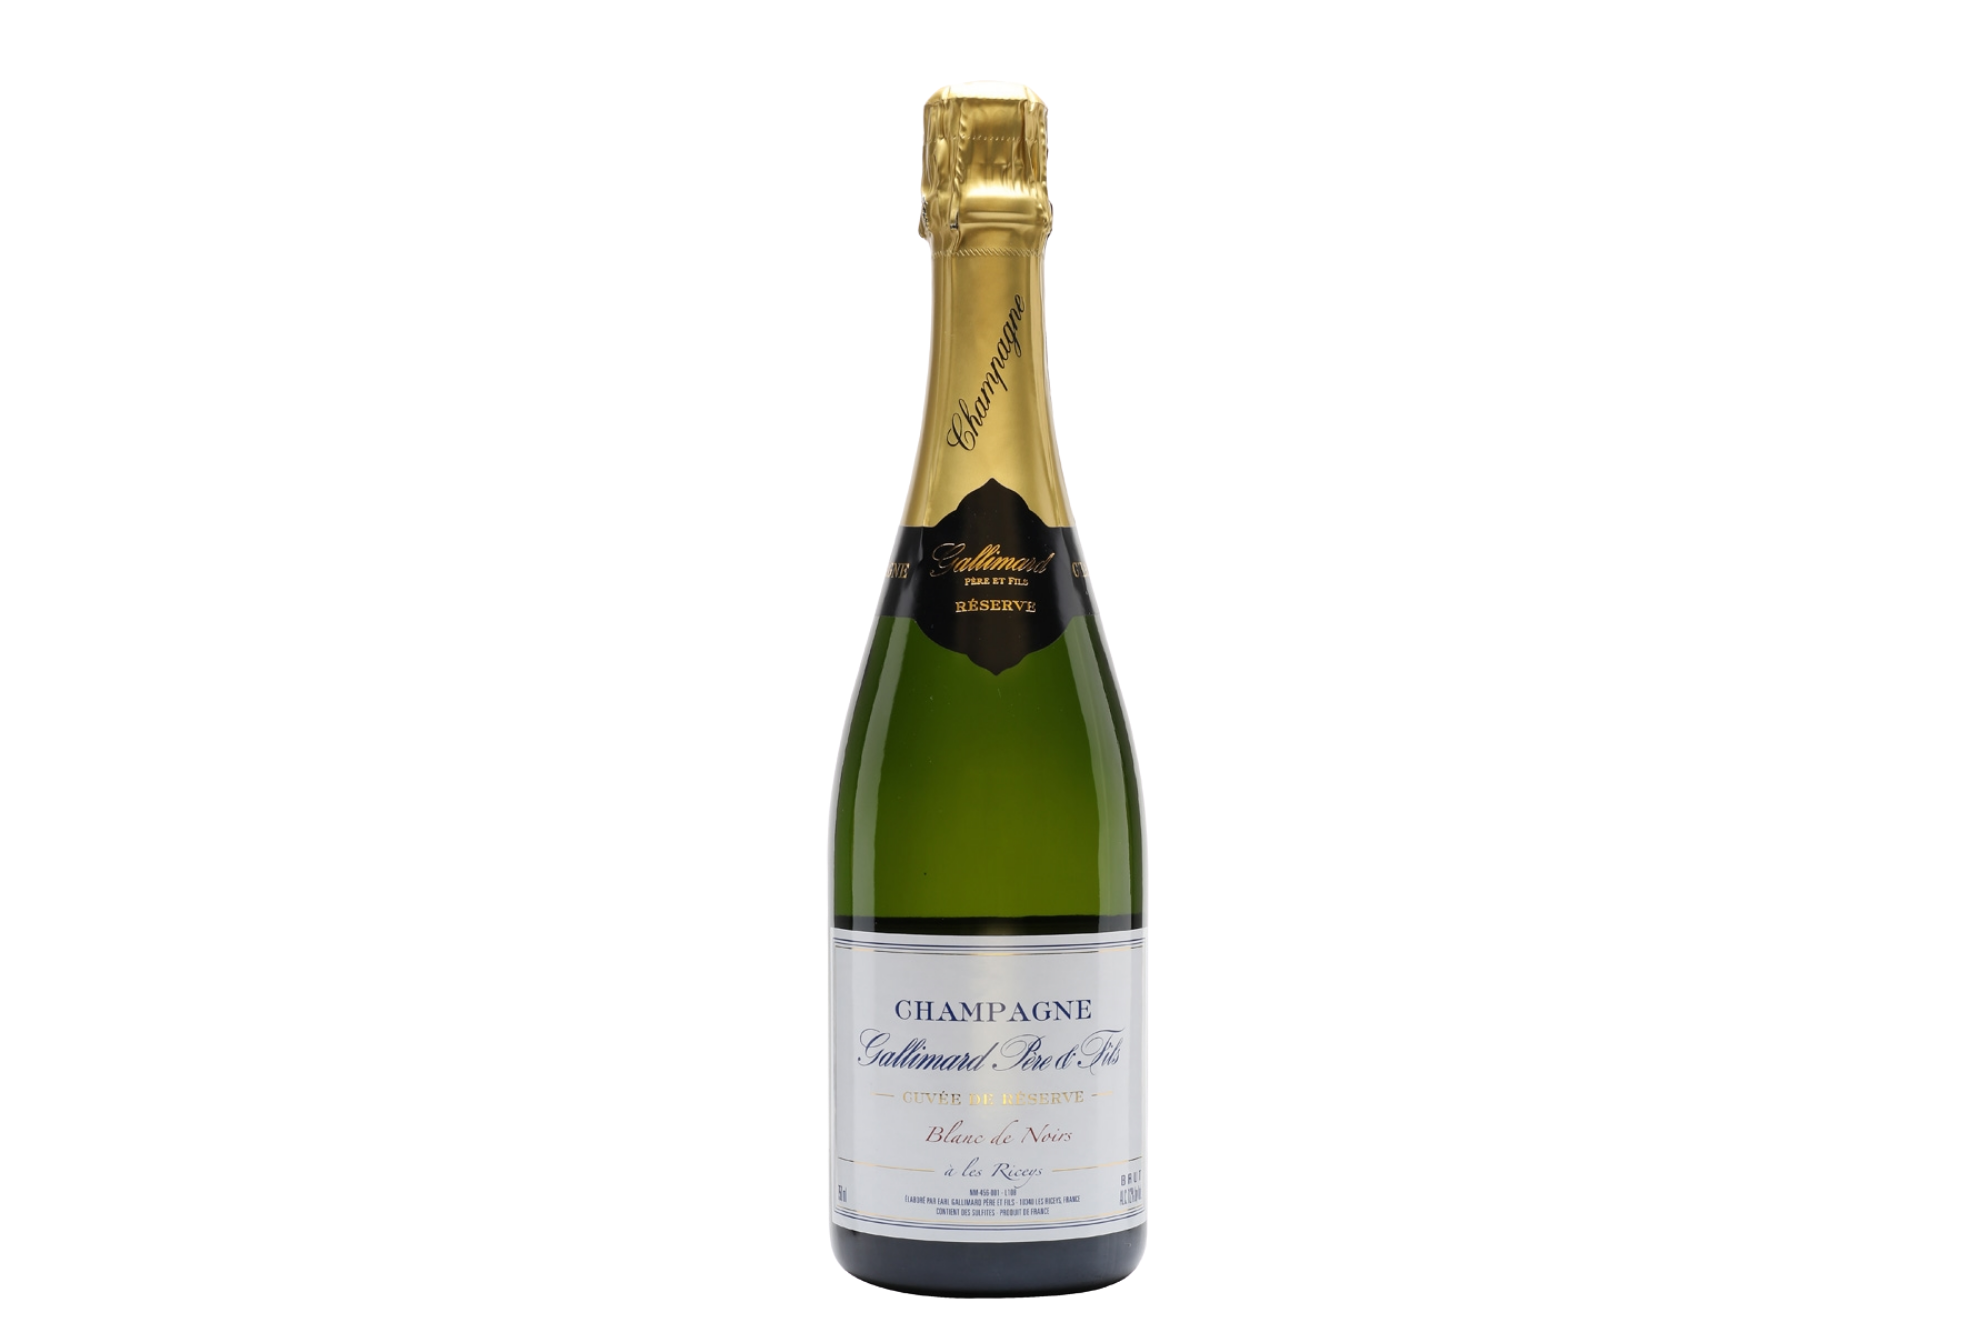 Gallimard Pere & Fils Cuvee de Reserve Blanc de Noirs Champagne Brut NV